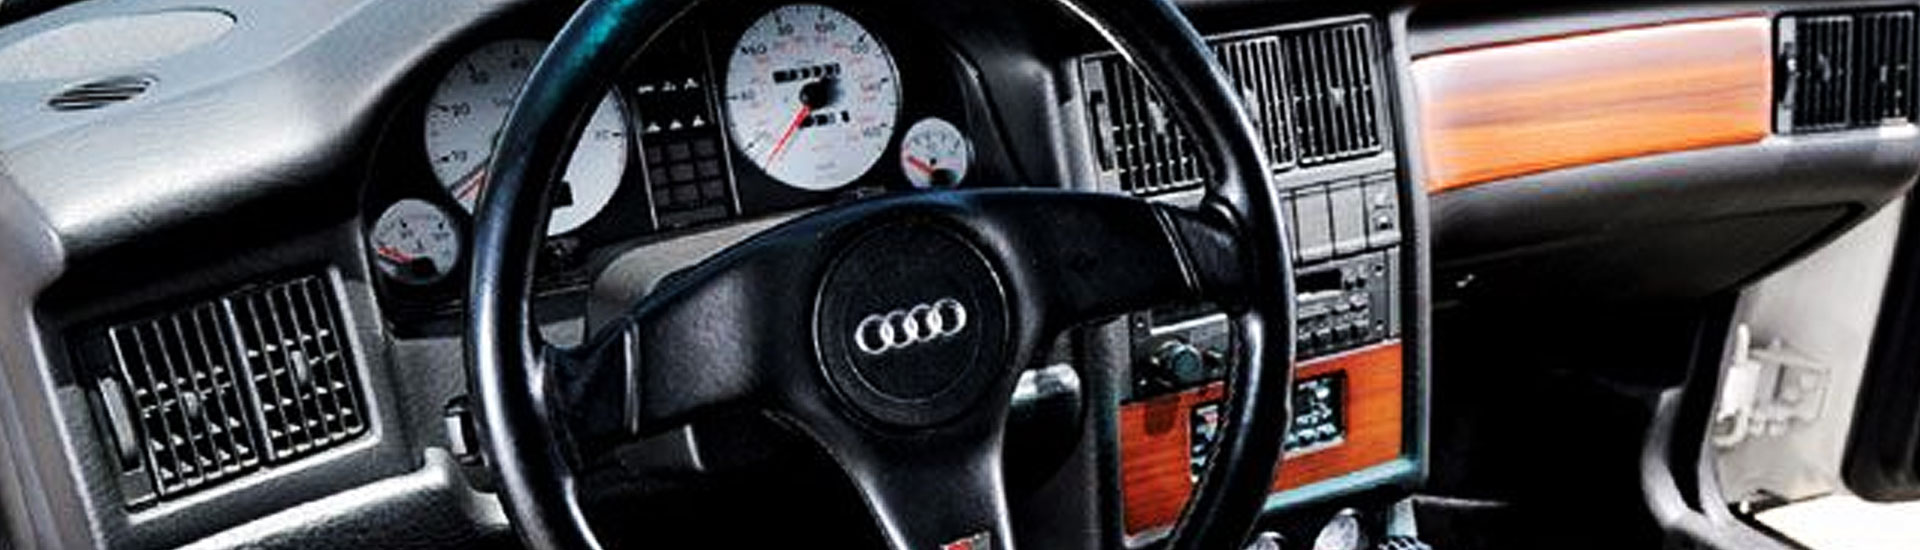 Audi 90 Custom Dash Kits